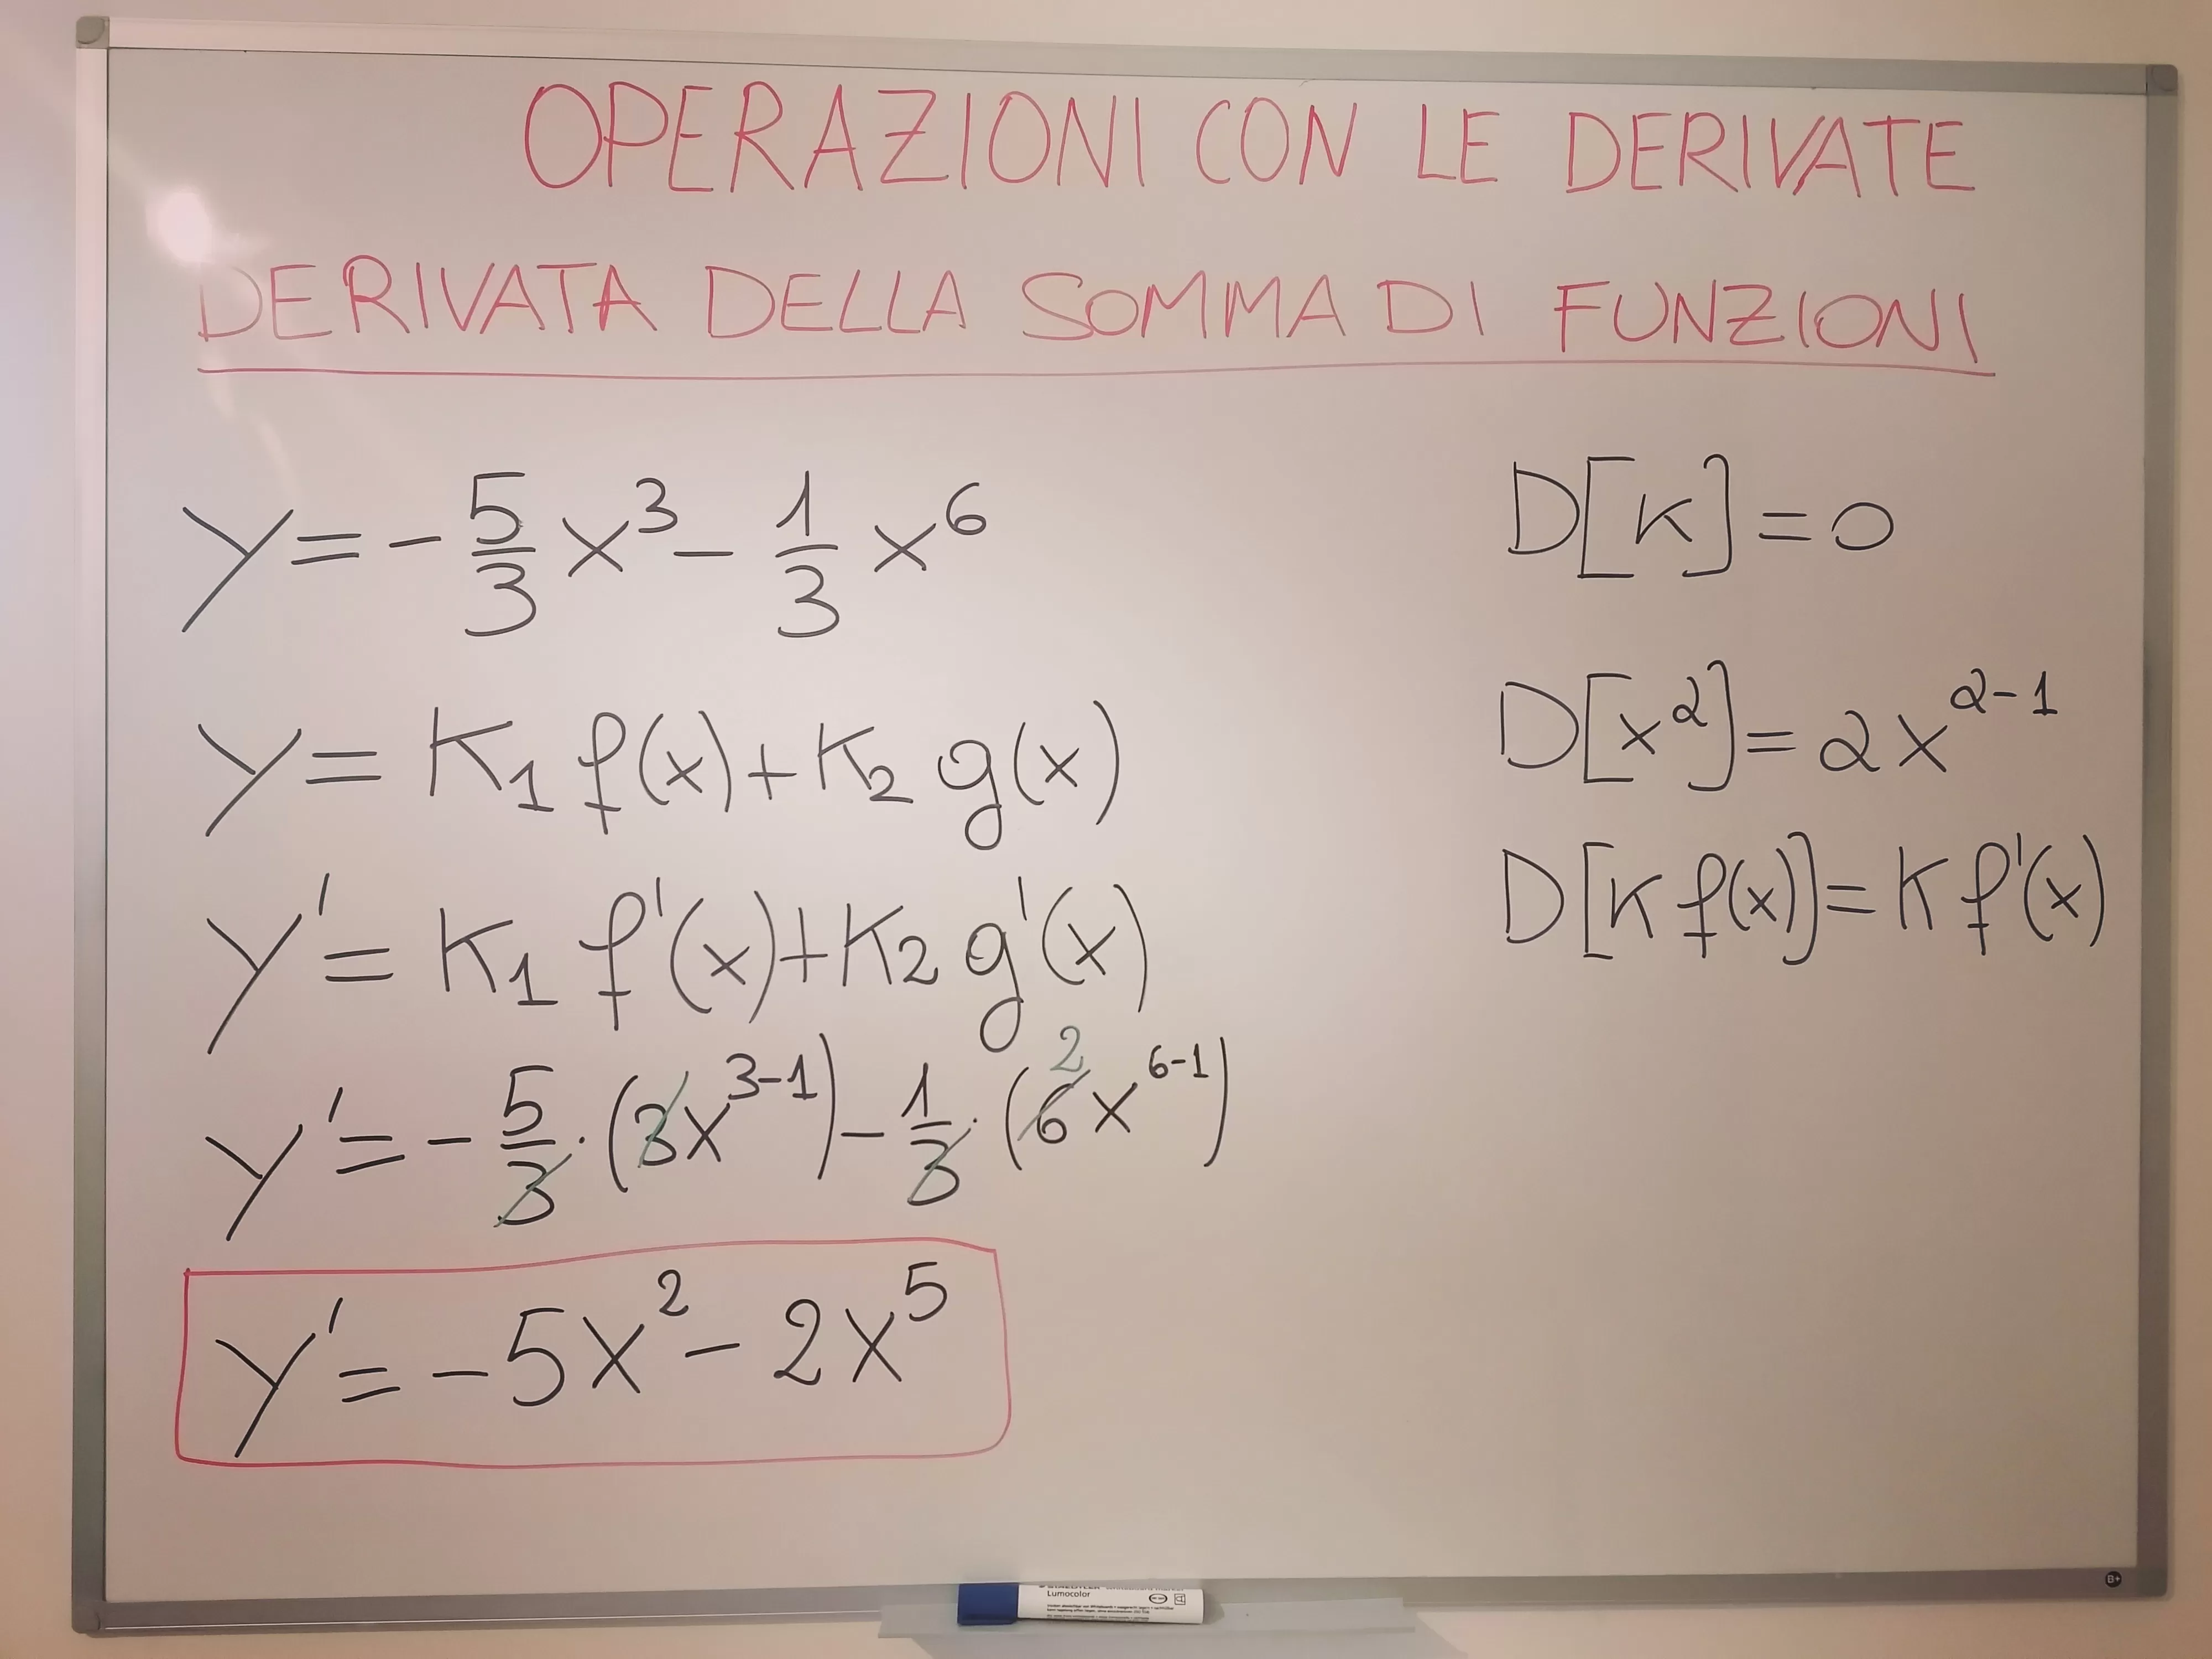 Calcola la derivata di y= -5/3 x^2 - 1/3 x^6